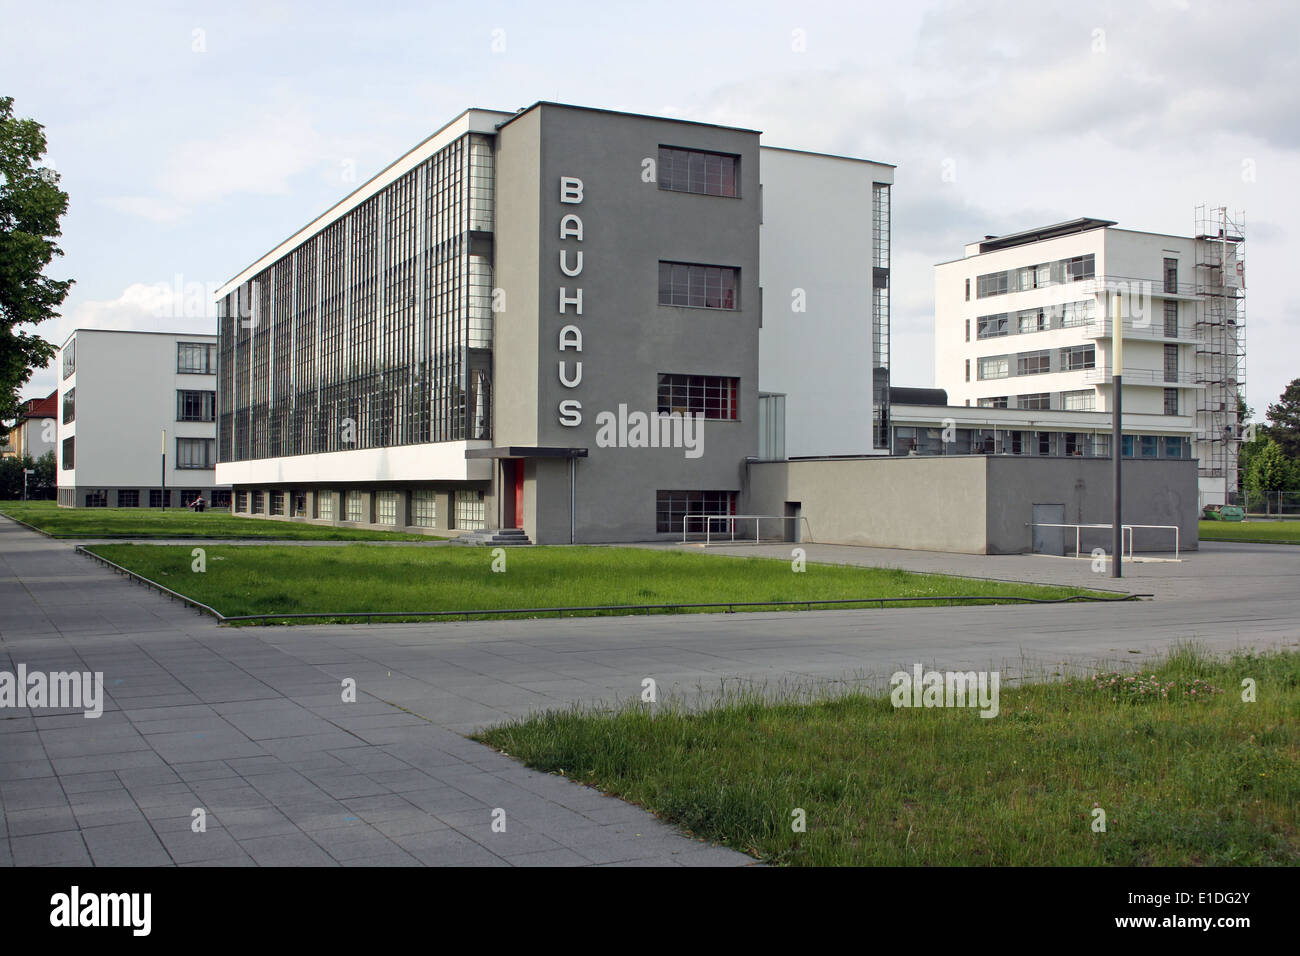 El reformado de la Bauhaus en Dessau, Alemania, uno de los grandes edificios de la definición de principios del movimiento moderno en la arquitectura, el arquitecto Walter Gropius Foto de stock